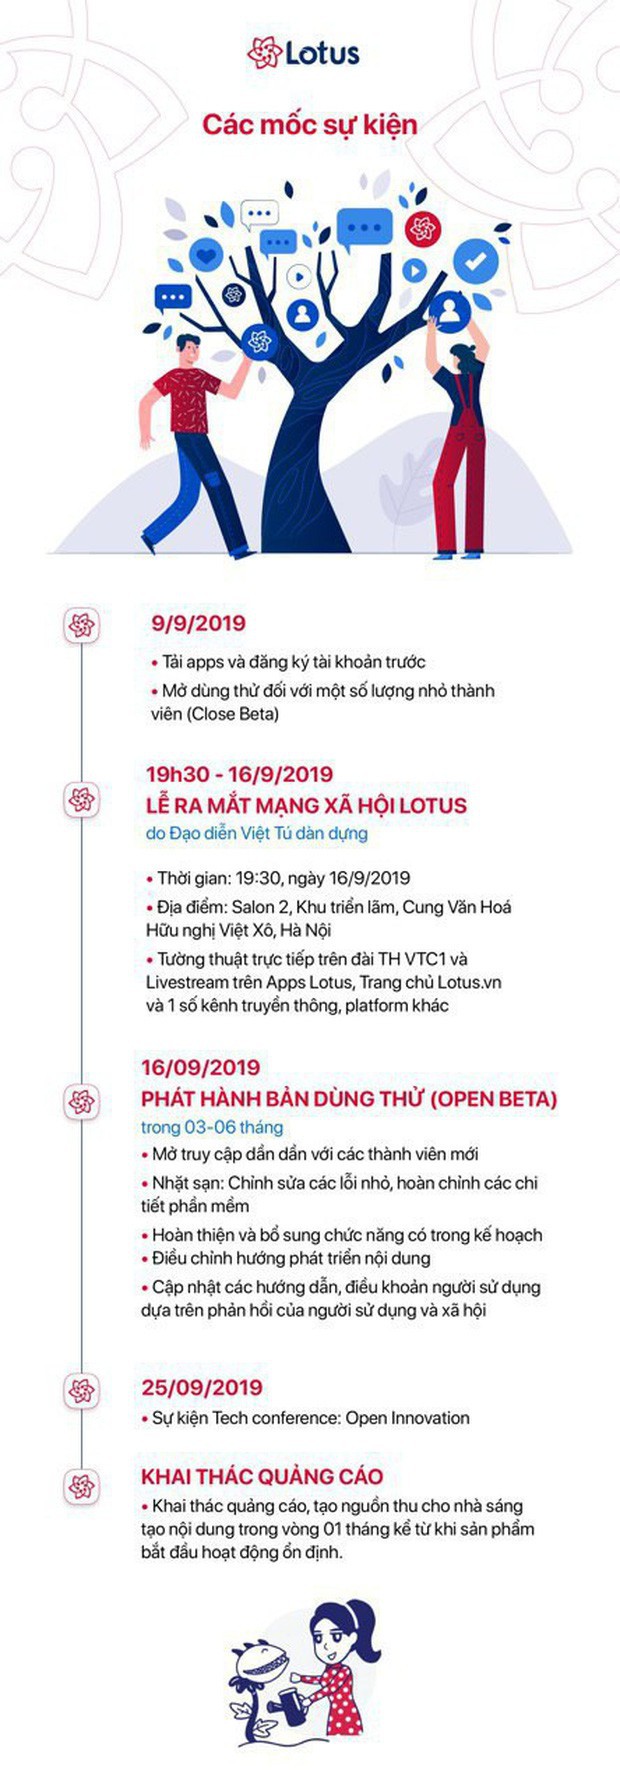 Đạo diễn Việt Tú hé lộ những thông tin nóng hổi trước giờ G lễ ra mắt MXH Lotus: Đây sẽ là sự kiện công nghệ làm thỏa mãn tất cả mọi người! - Ảnh 8.